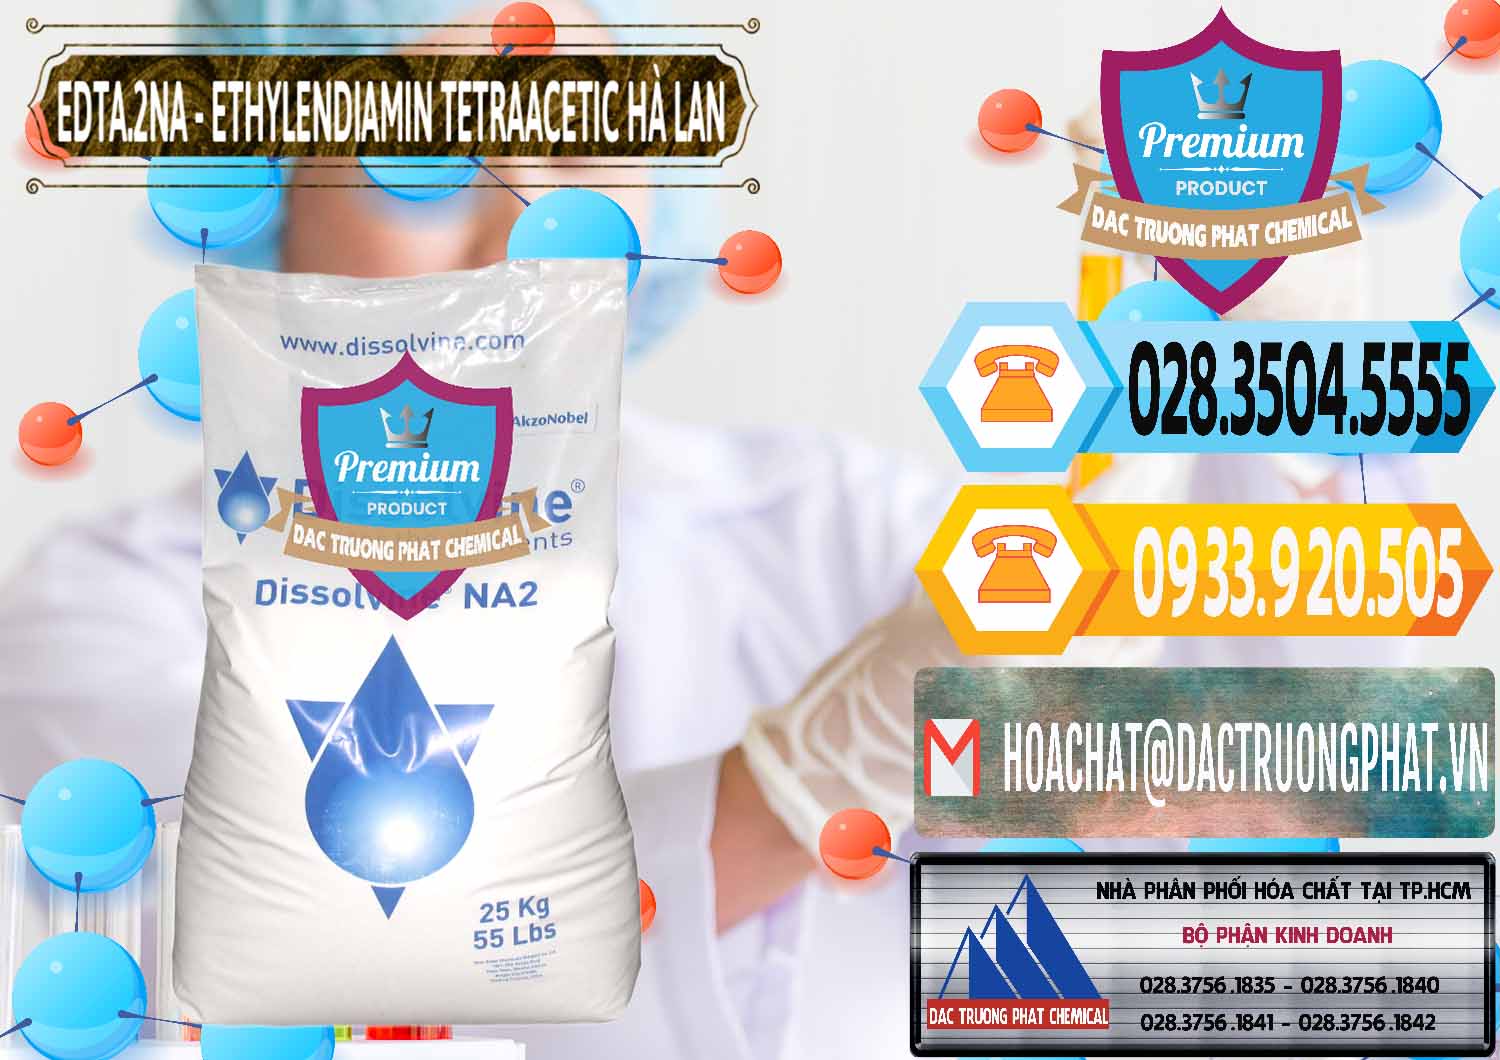 Cty chuyên bán và cung cấp EDTA.2NA - Ethylendiamin Tetraacetic Dissolvine Hà Lan Netherlands - 0064 - Đơn vị kinh doanh ( cung cấp ) hóa chất tại TP.HCM - hoachattayrua.net